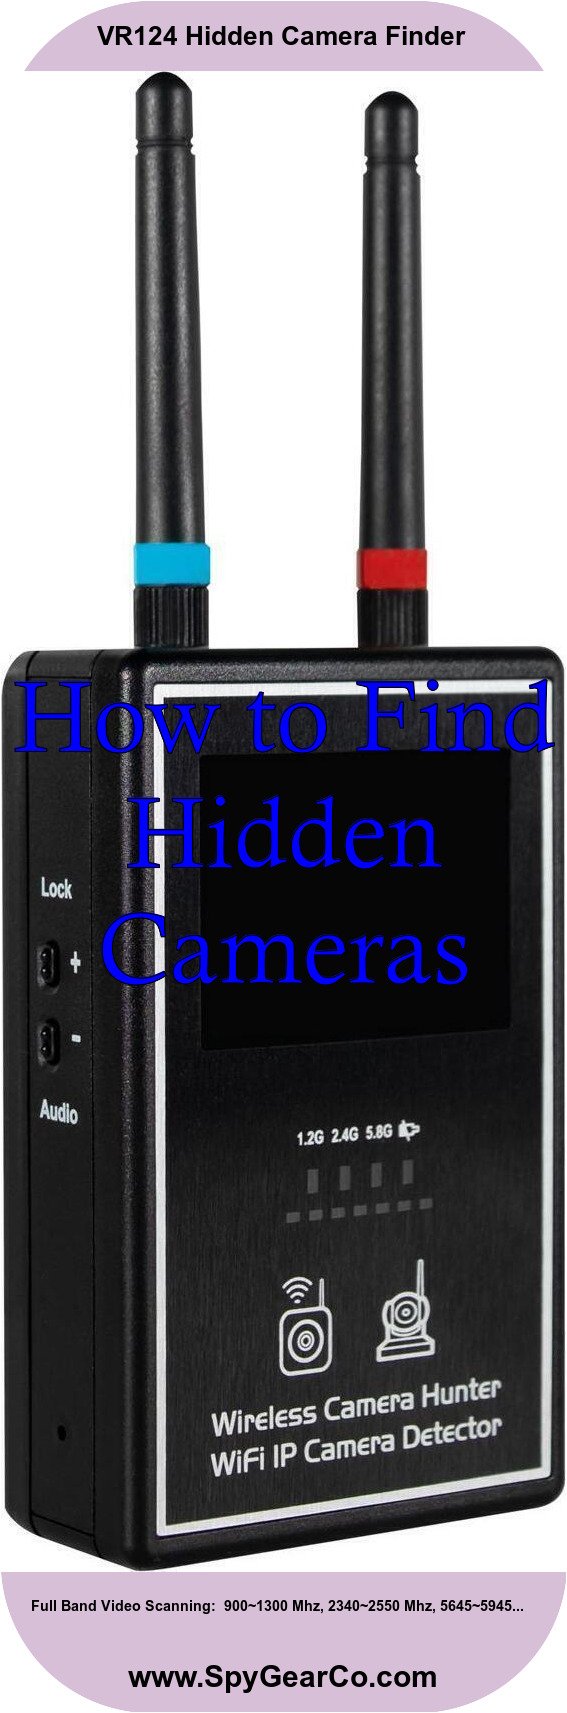 VR124 Hidden Camera Finder